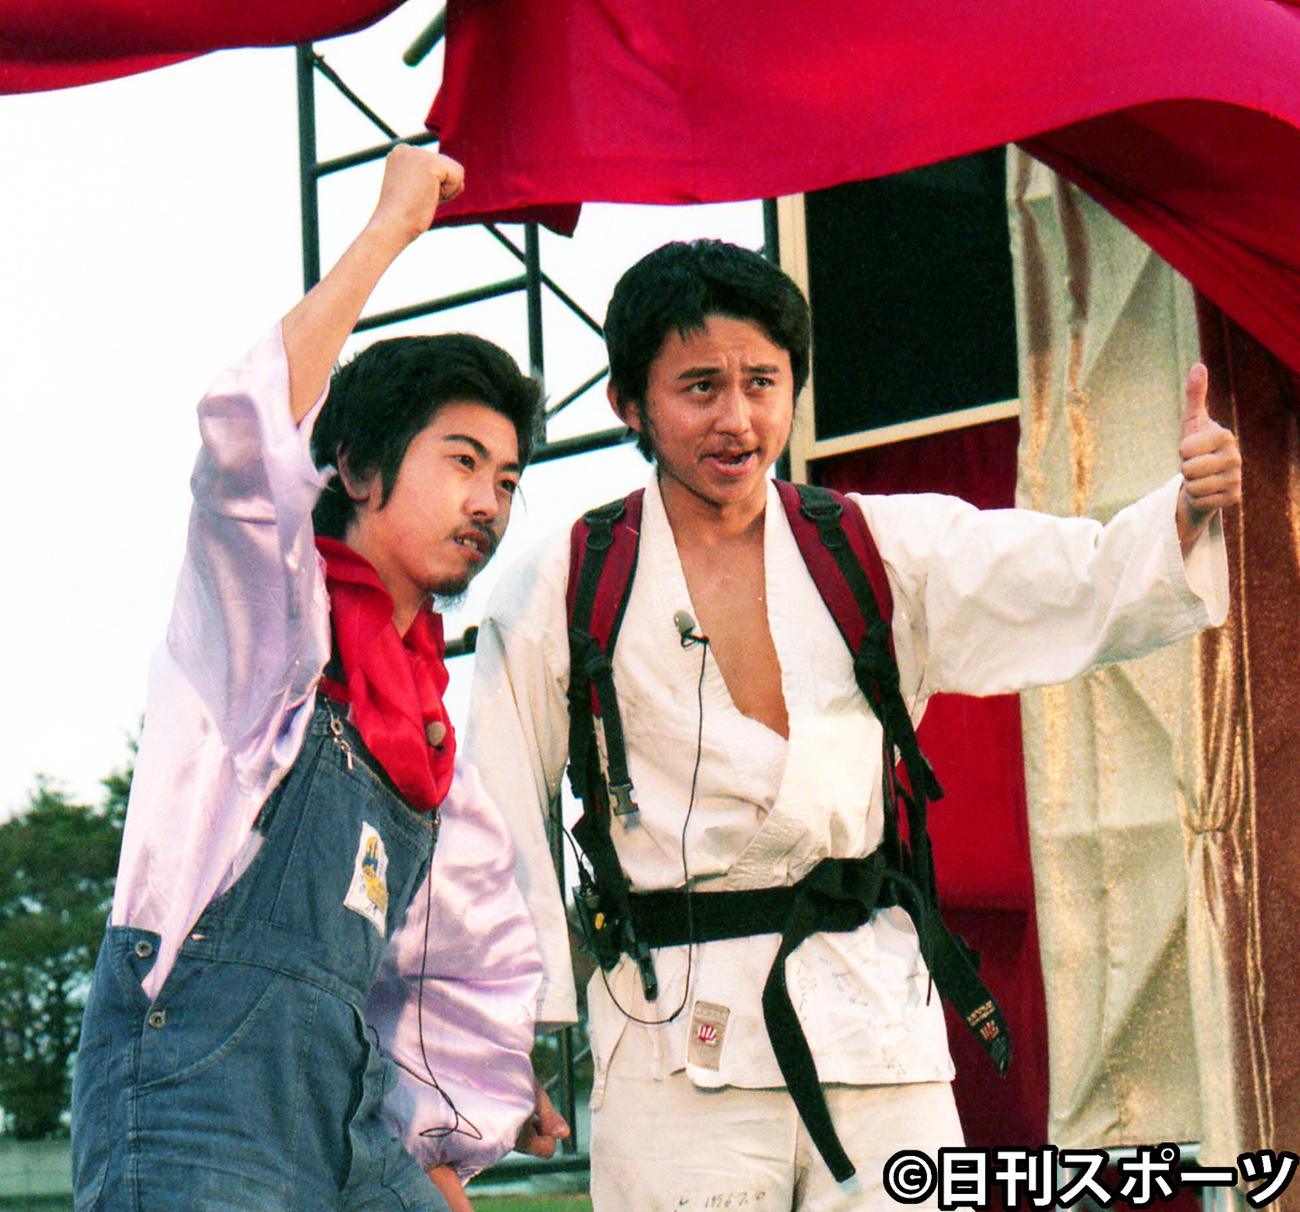 「電波少年祭り」でポーズを取る猿岩石の有吉弘行（右）と森脇和成（1996年10月26日撮影）